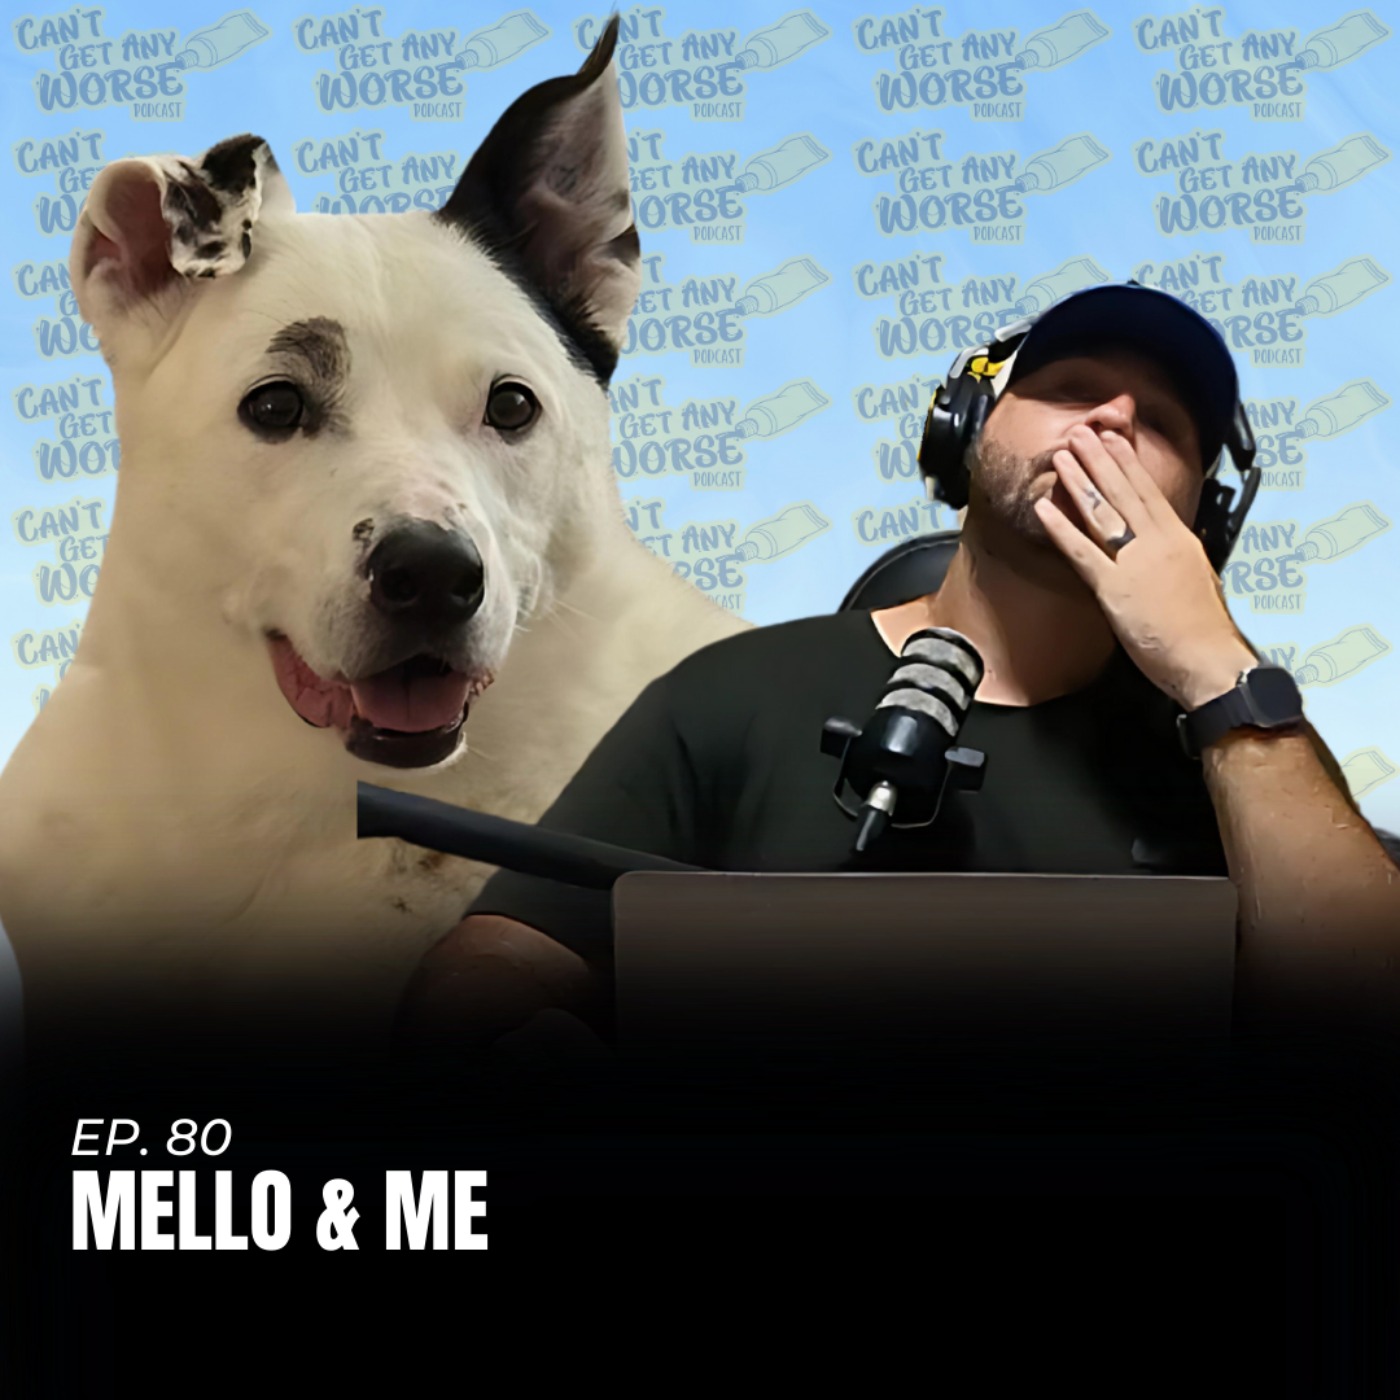 Ep. 80 "Mello & Me"